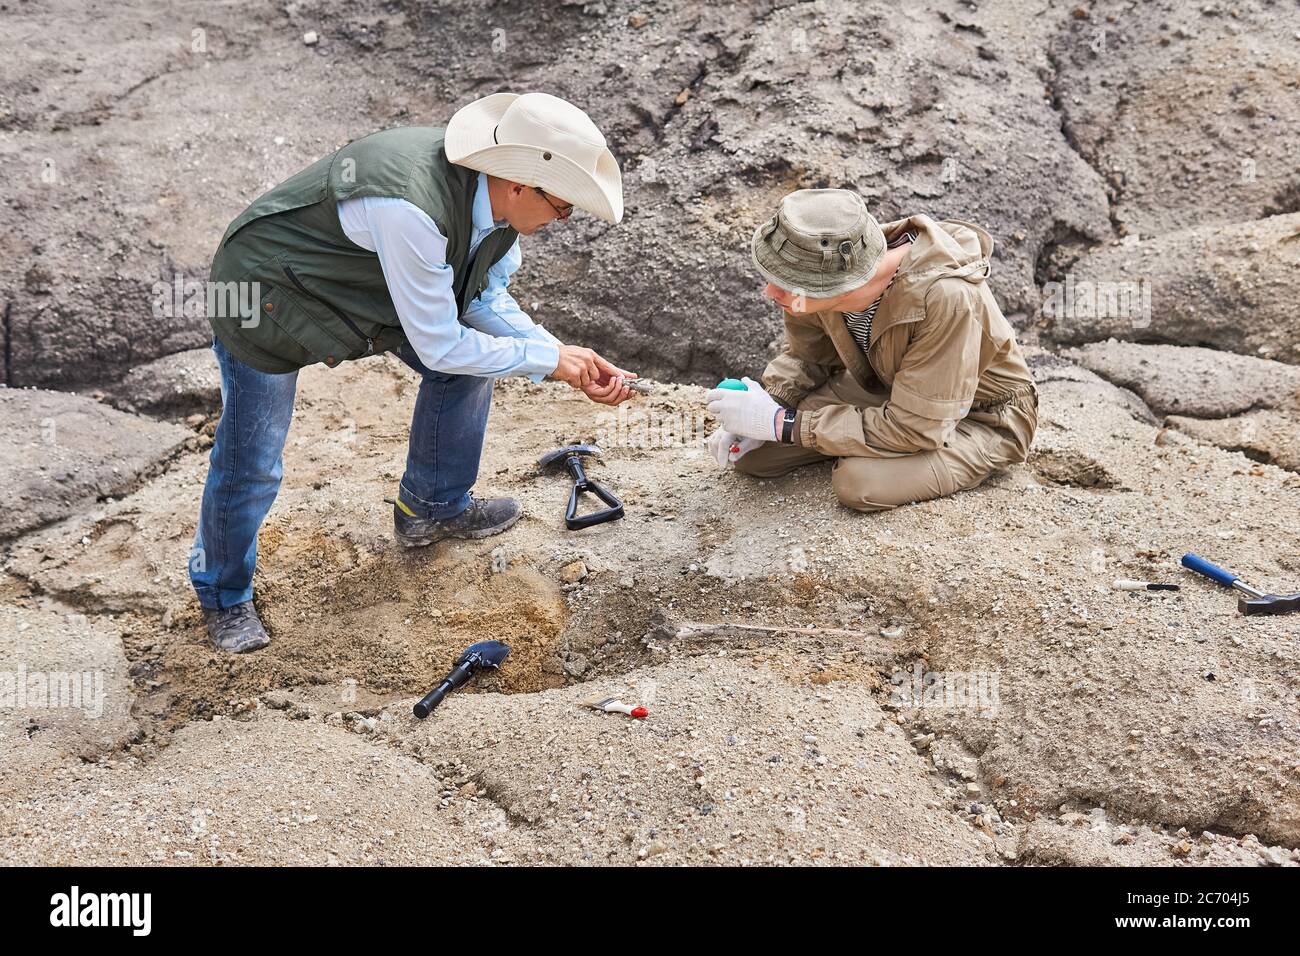 deux archéologues ou paléontologues dans une expédition sur le terrain discutent des os anciens qu'ils ont creusées Banque D'Images